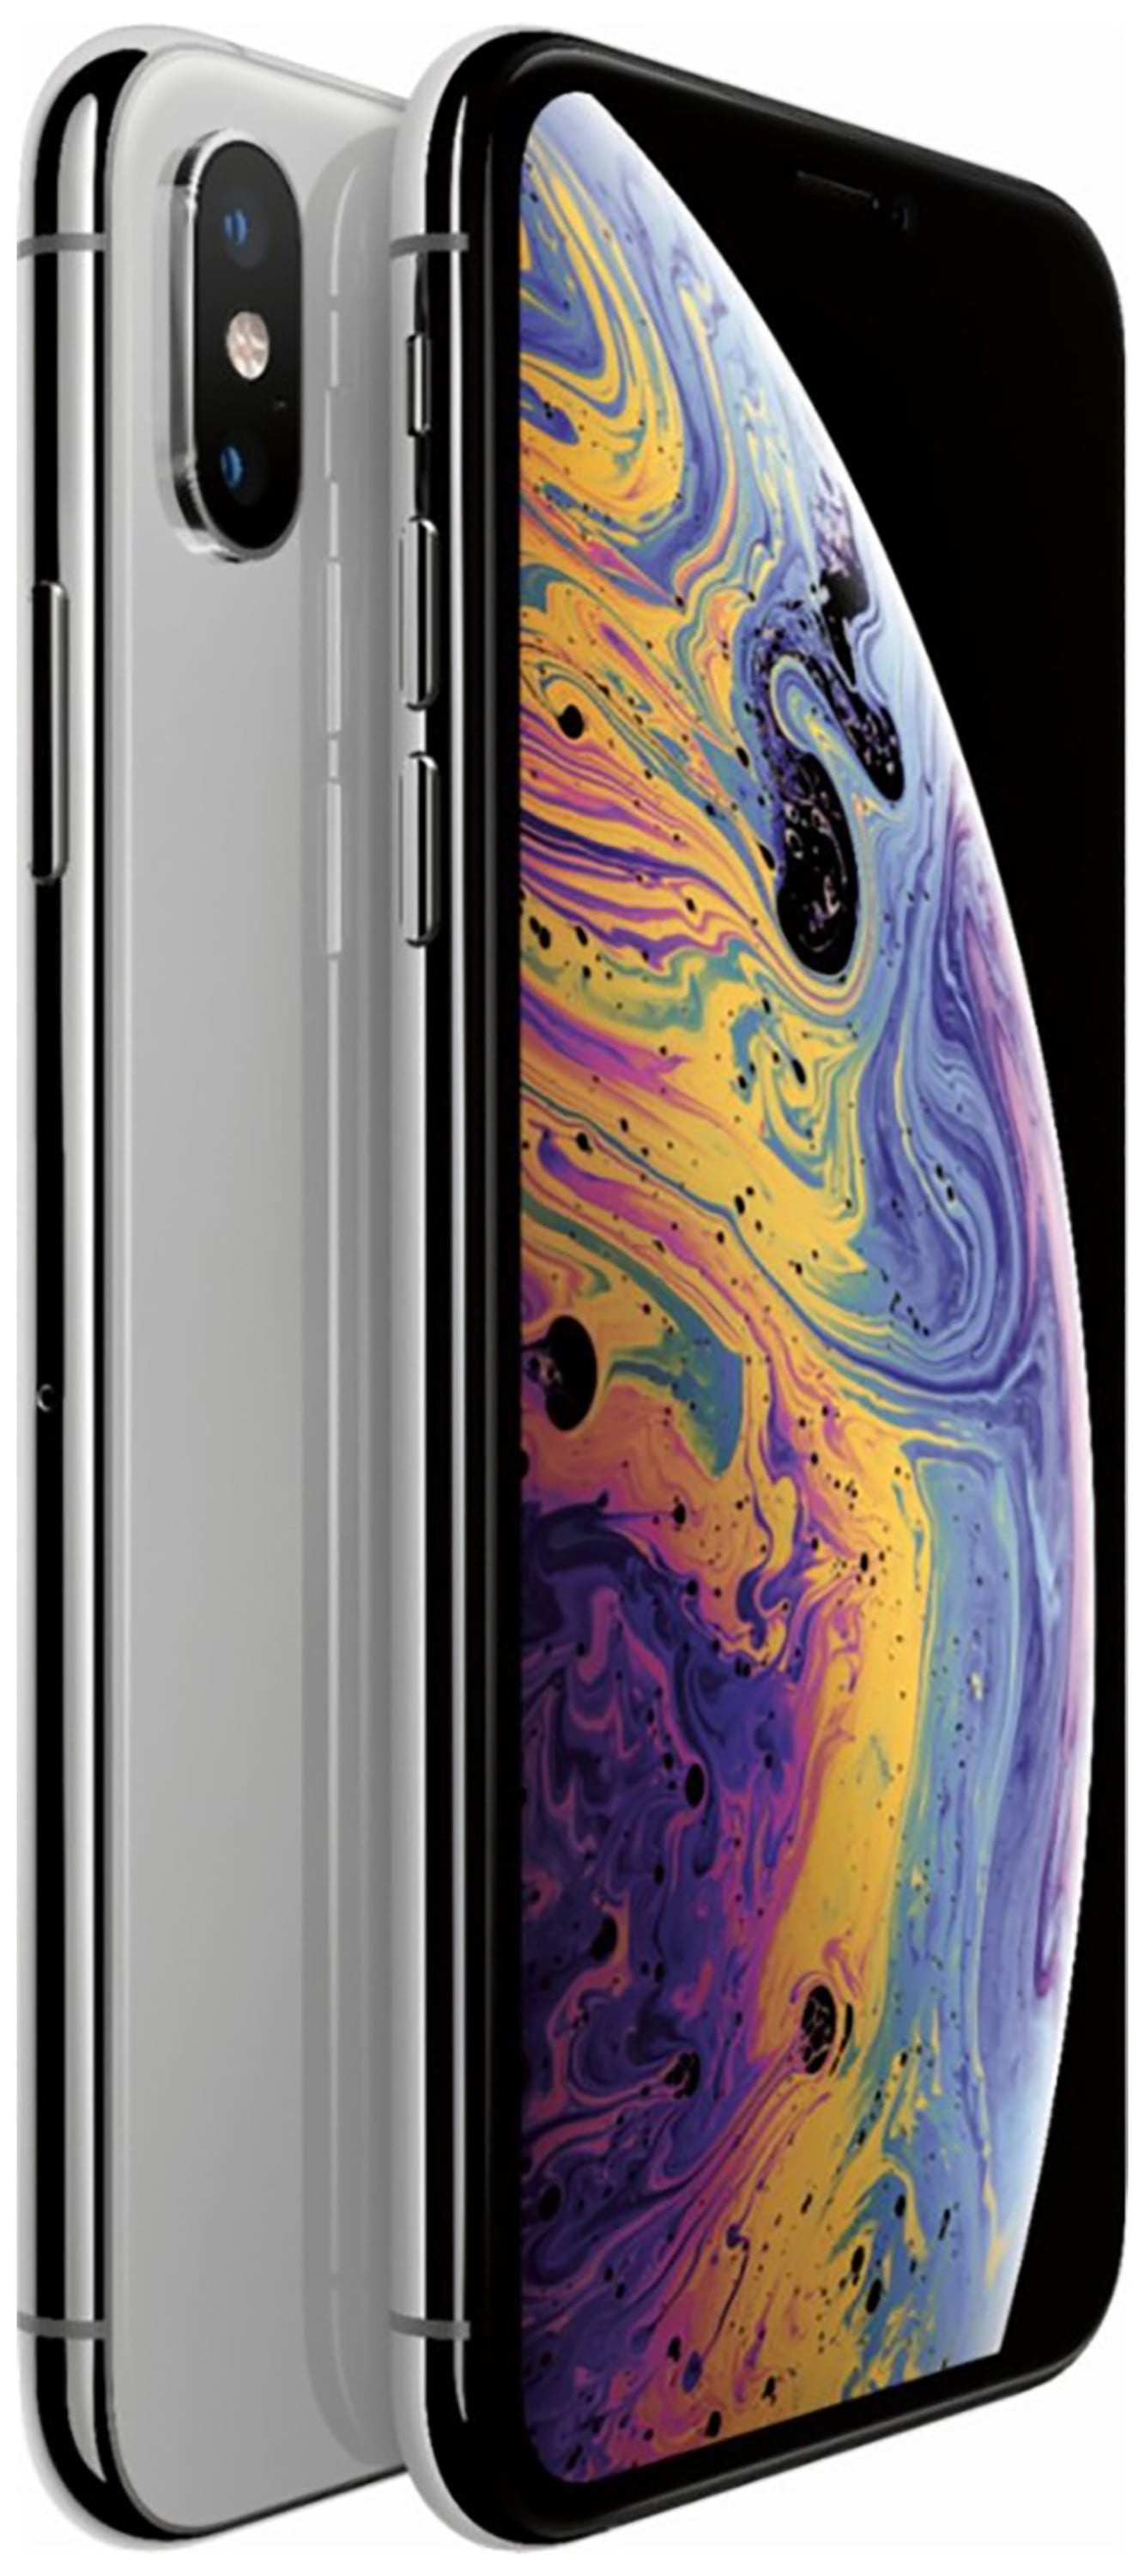 Smartphone Reacondicionado 5.8 Apple iPhone XS - 4Gb 64Gb - Silver